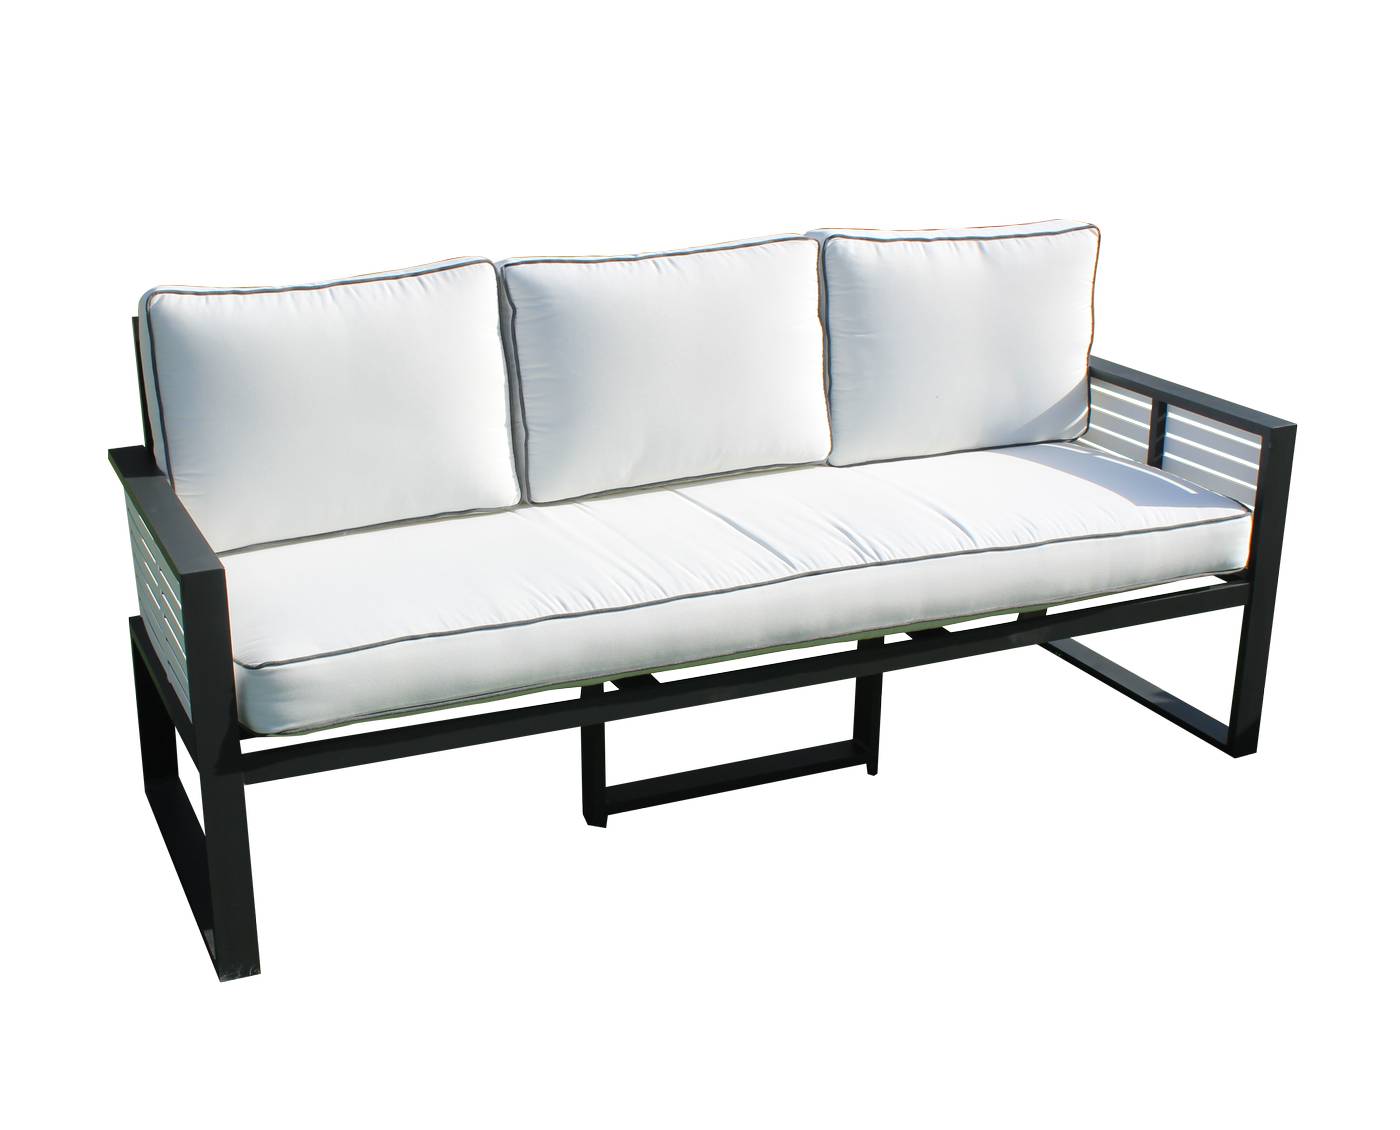 Exclusivo sofá 3 plazas de alumnio bicolor, con cojines gran confort desenfundables.